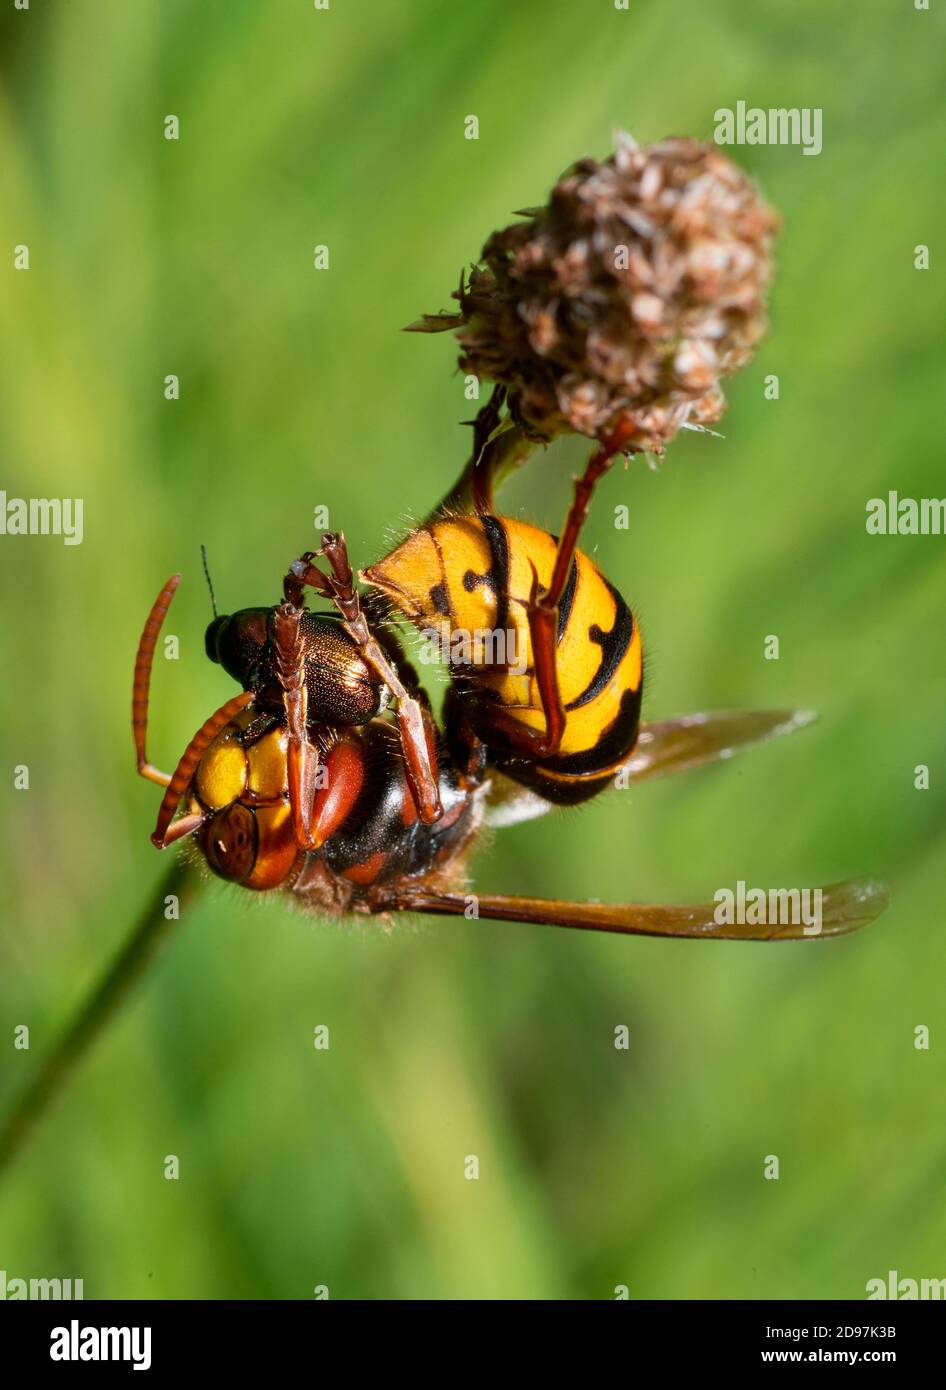 European Hornet (Vespa crabro) devouring a beetle, Vosges du Nord Regional Nature Park, France Stock Photo